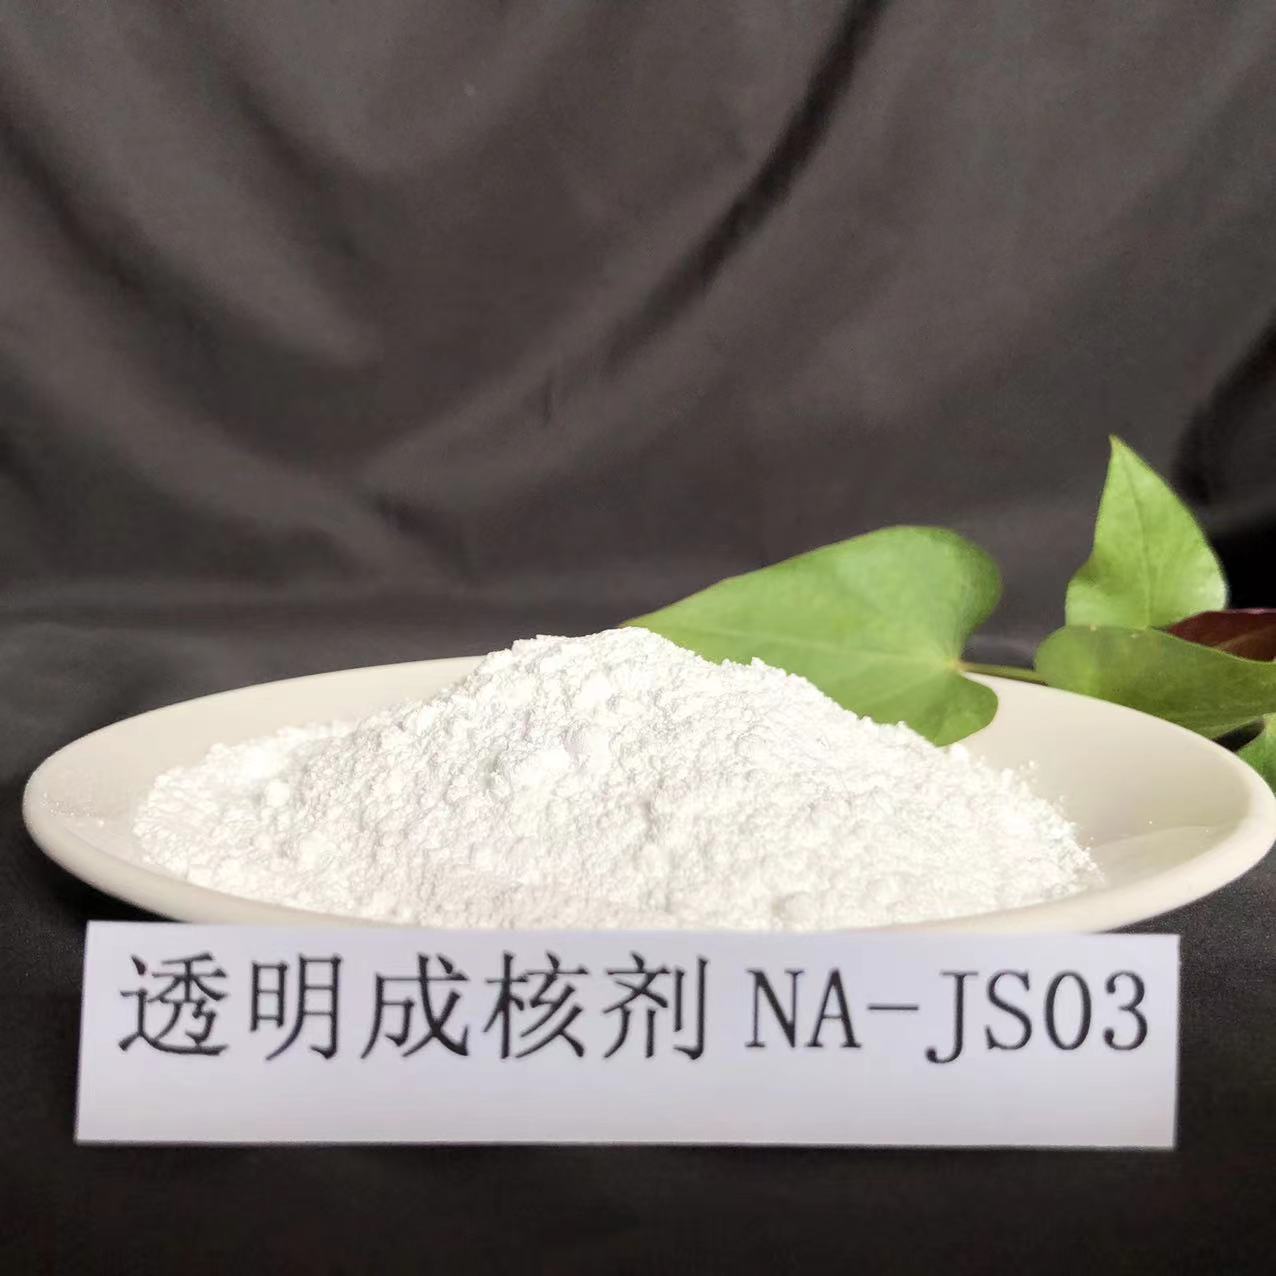 山梨醇类三代三代成核剂NA-JS03